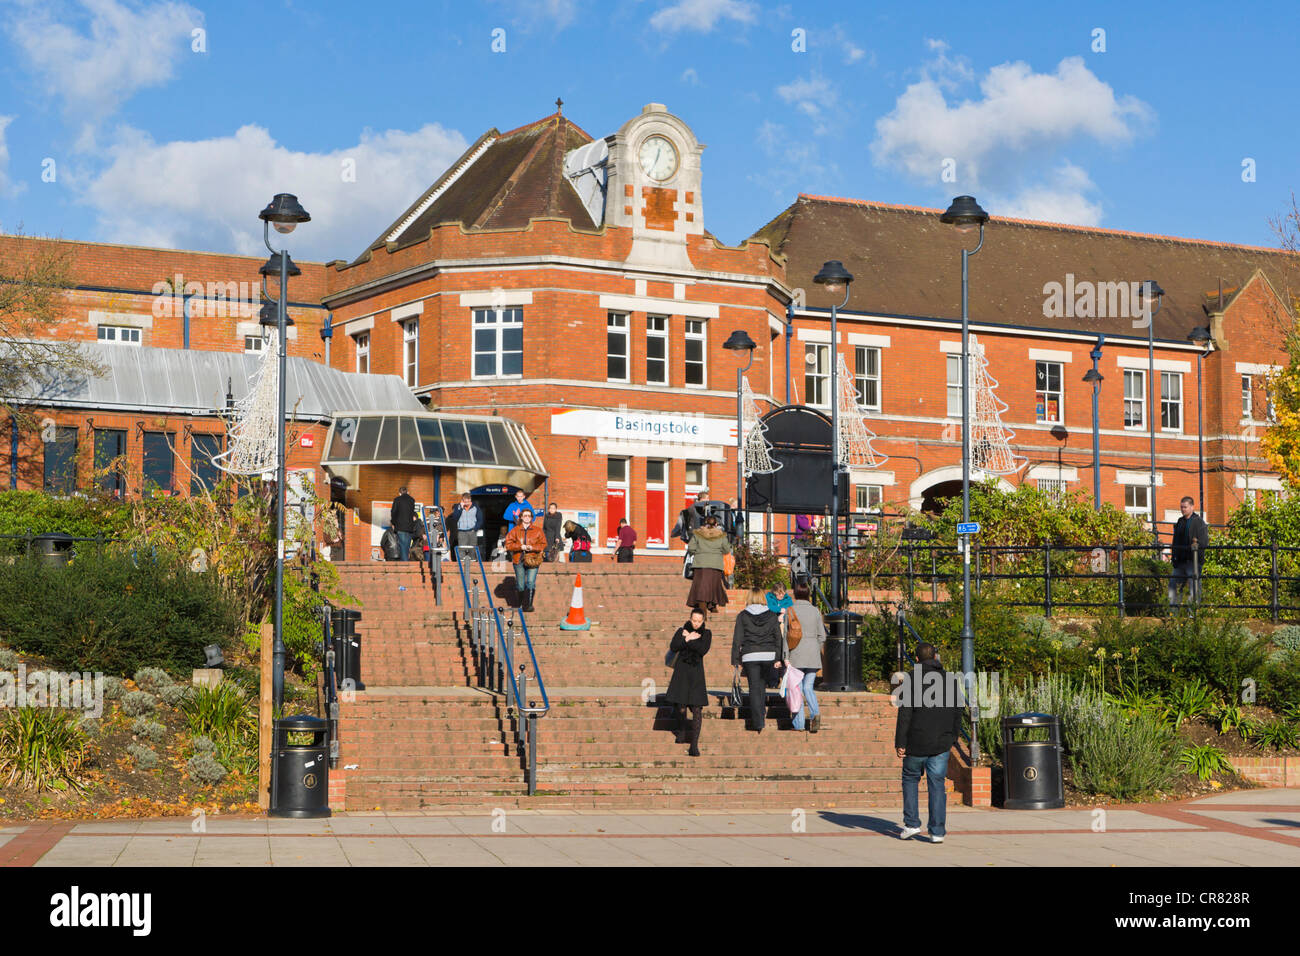 Basingstoke stazione ferroviaria da Alencon Link, Basingstoke, Hampshire, Inghilterra, Regno Unito, Europa Foto Stock